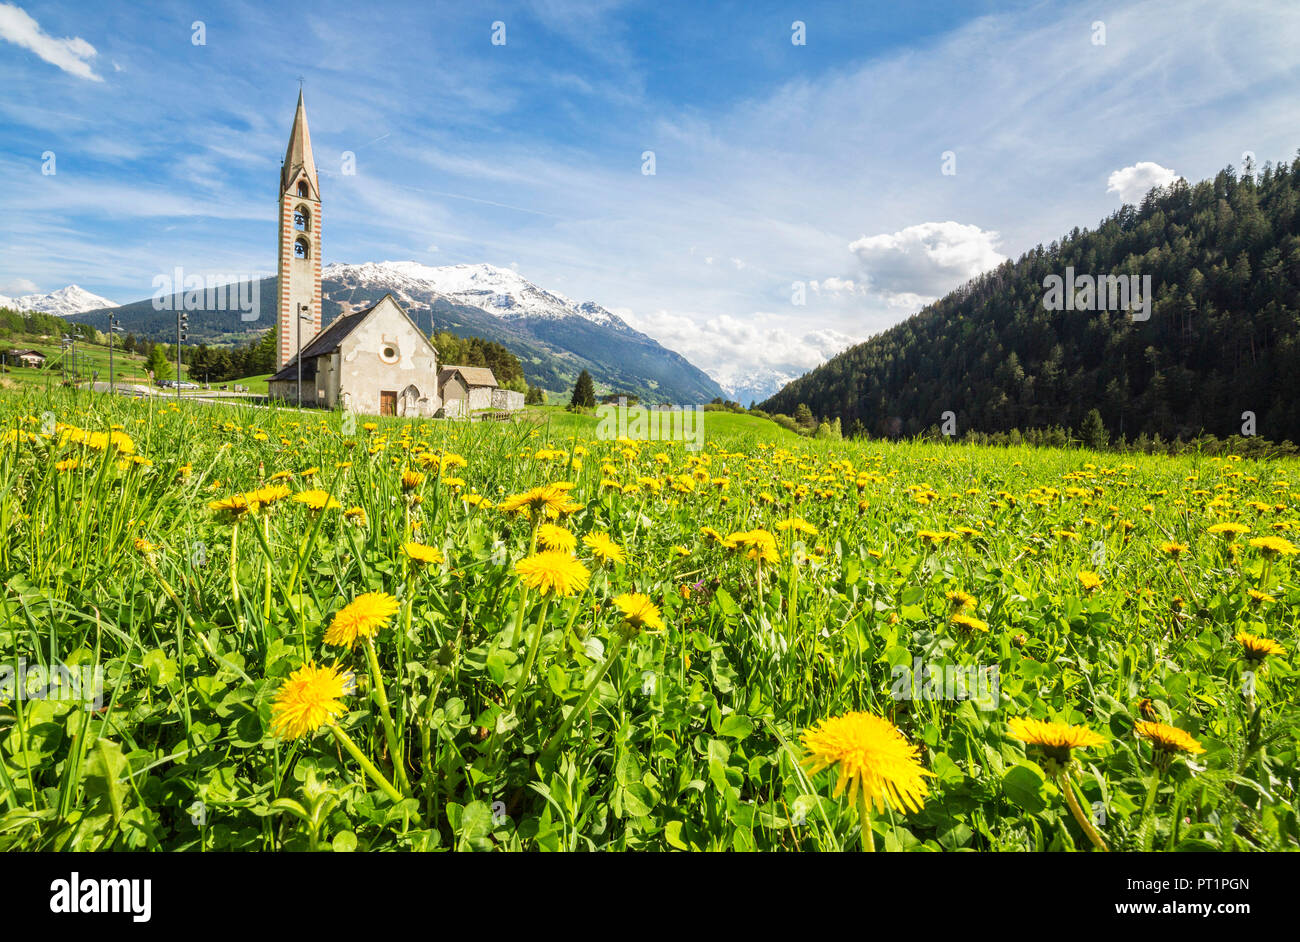 Fiori gialli e verdi prati telaio la chiesa di Premadio Bormio Parco Nazionale dello Stelvio Valtellina Lombardia Italia Foto Stock